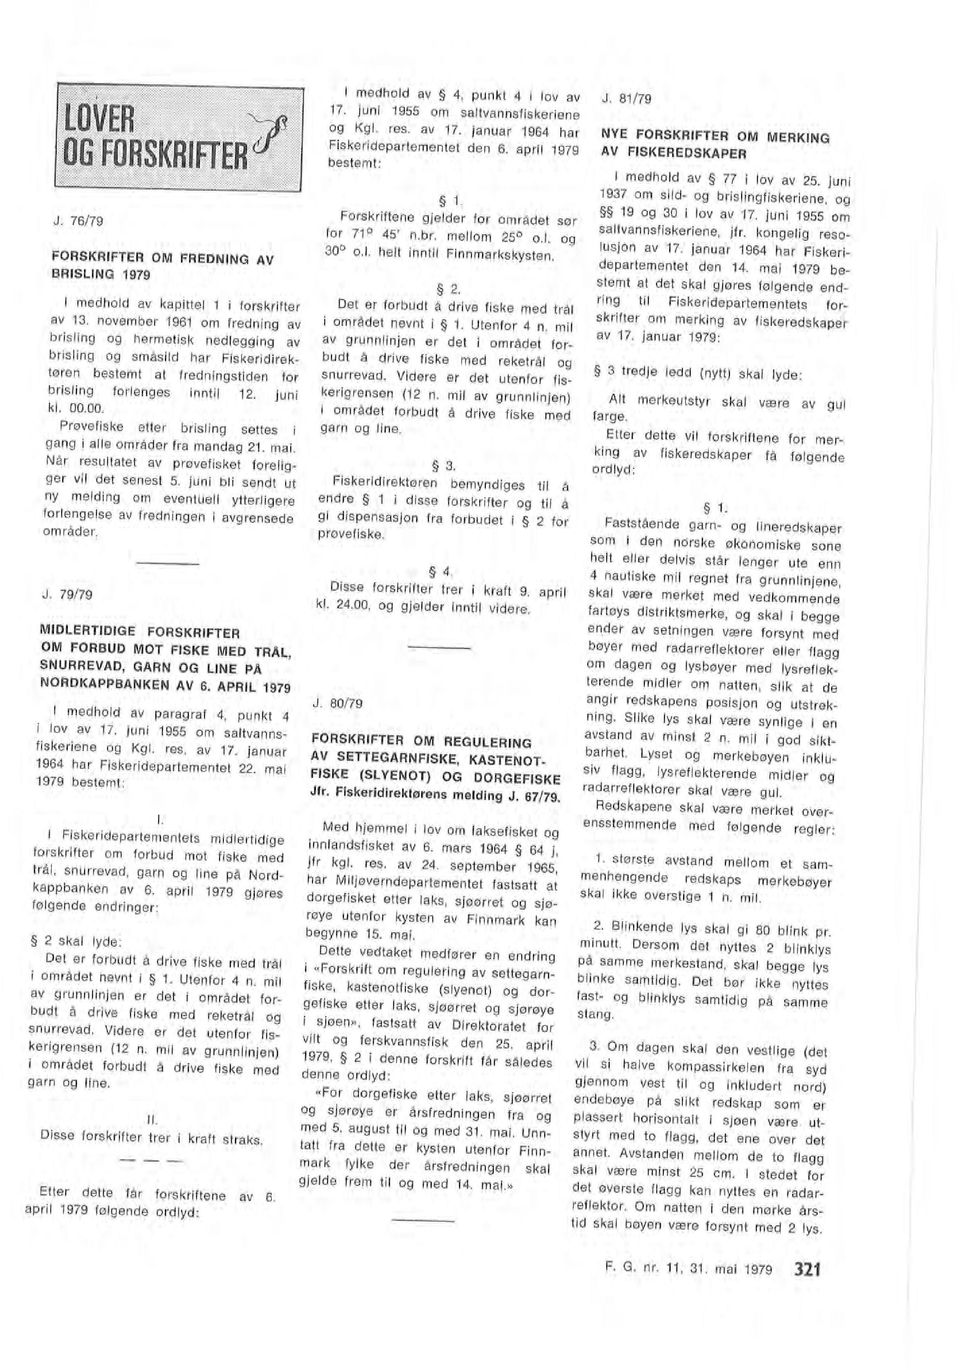 juni 1937 om sid og brisingfiskeriene, og 19 og 30 i ov av 17. juni 1955 om Etter dette får forskriftene av 6. apri 1979 føgende ordyd : I. Disse forskrifter trer i kraft straks.